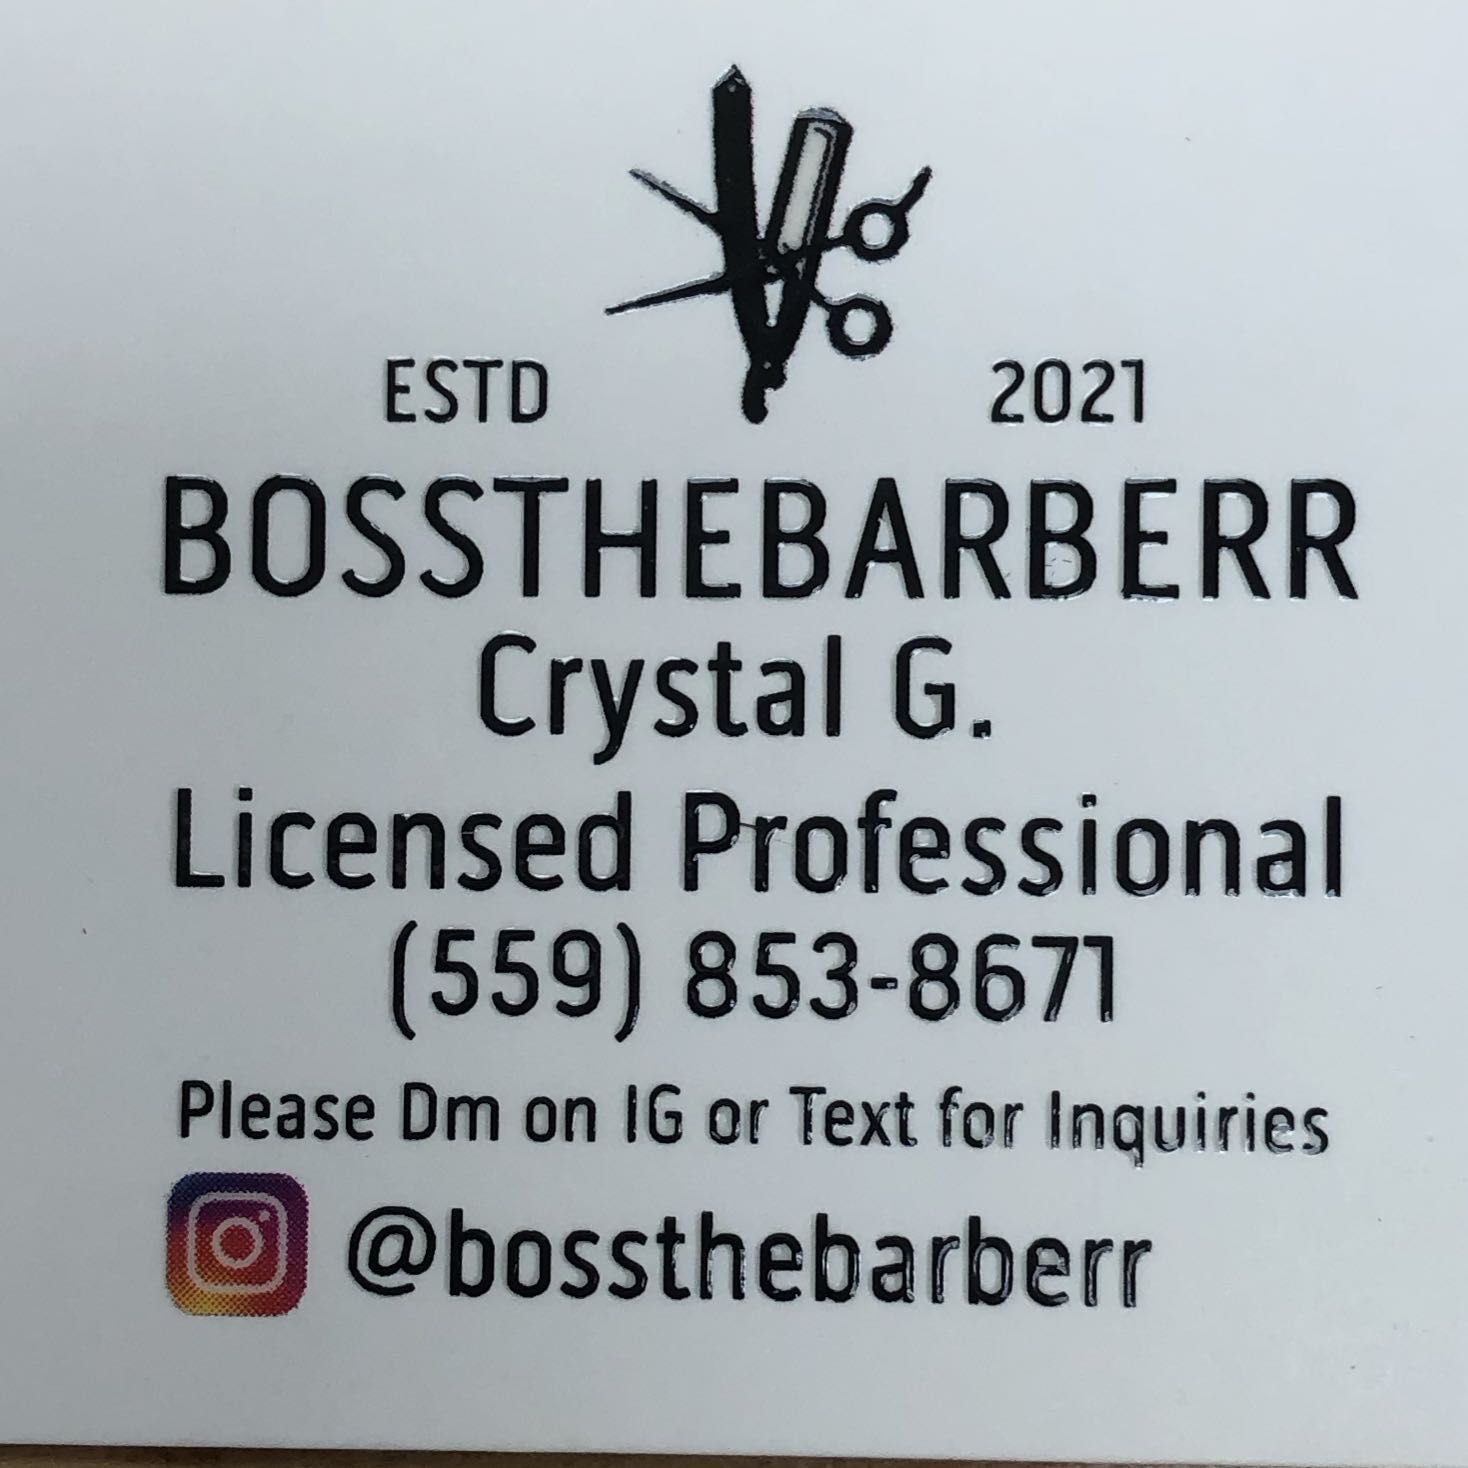 Bossthebarberr (Crystal G.) Lavish Barbershop, 639 N. Main St. Suite A, Porterville, 93257